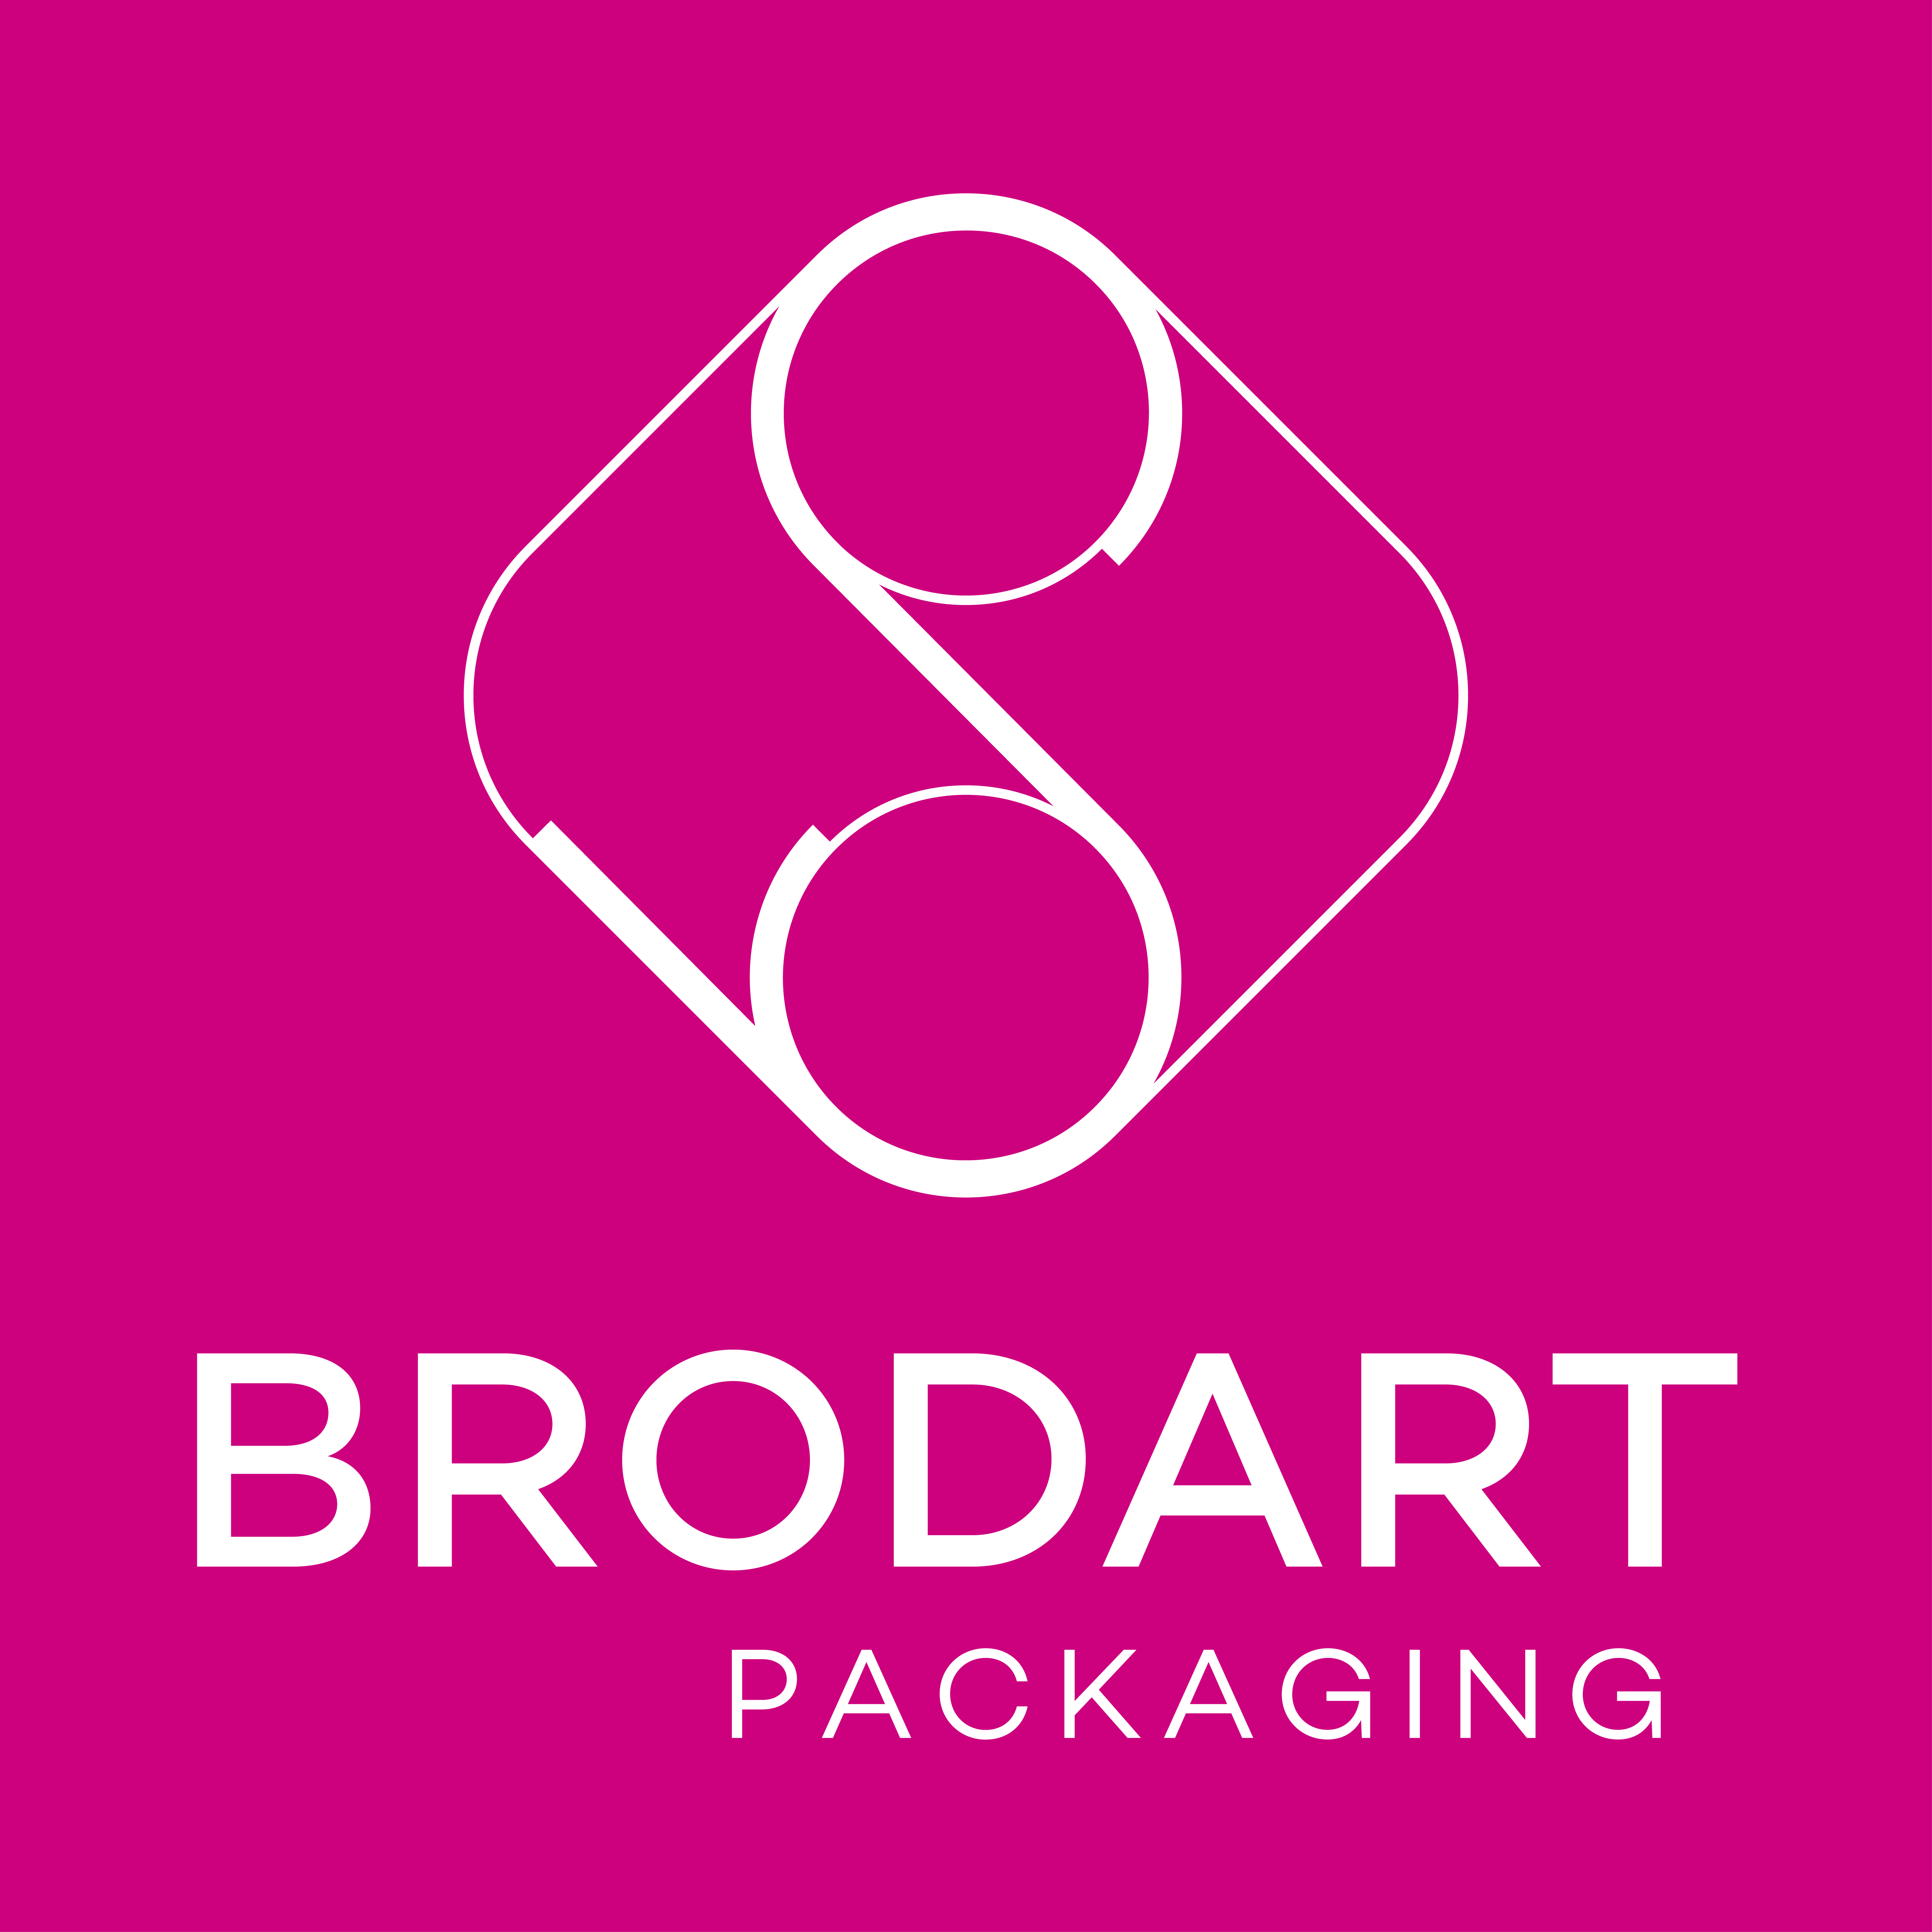 BRODART Packaging